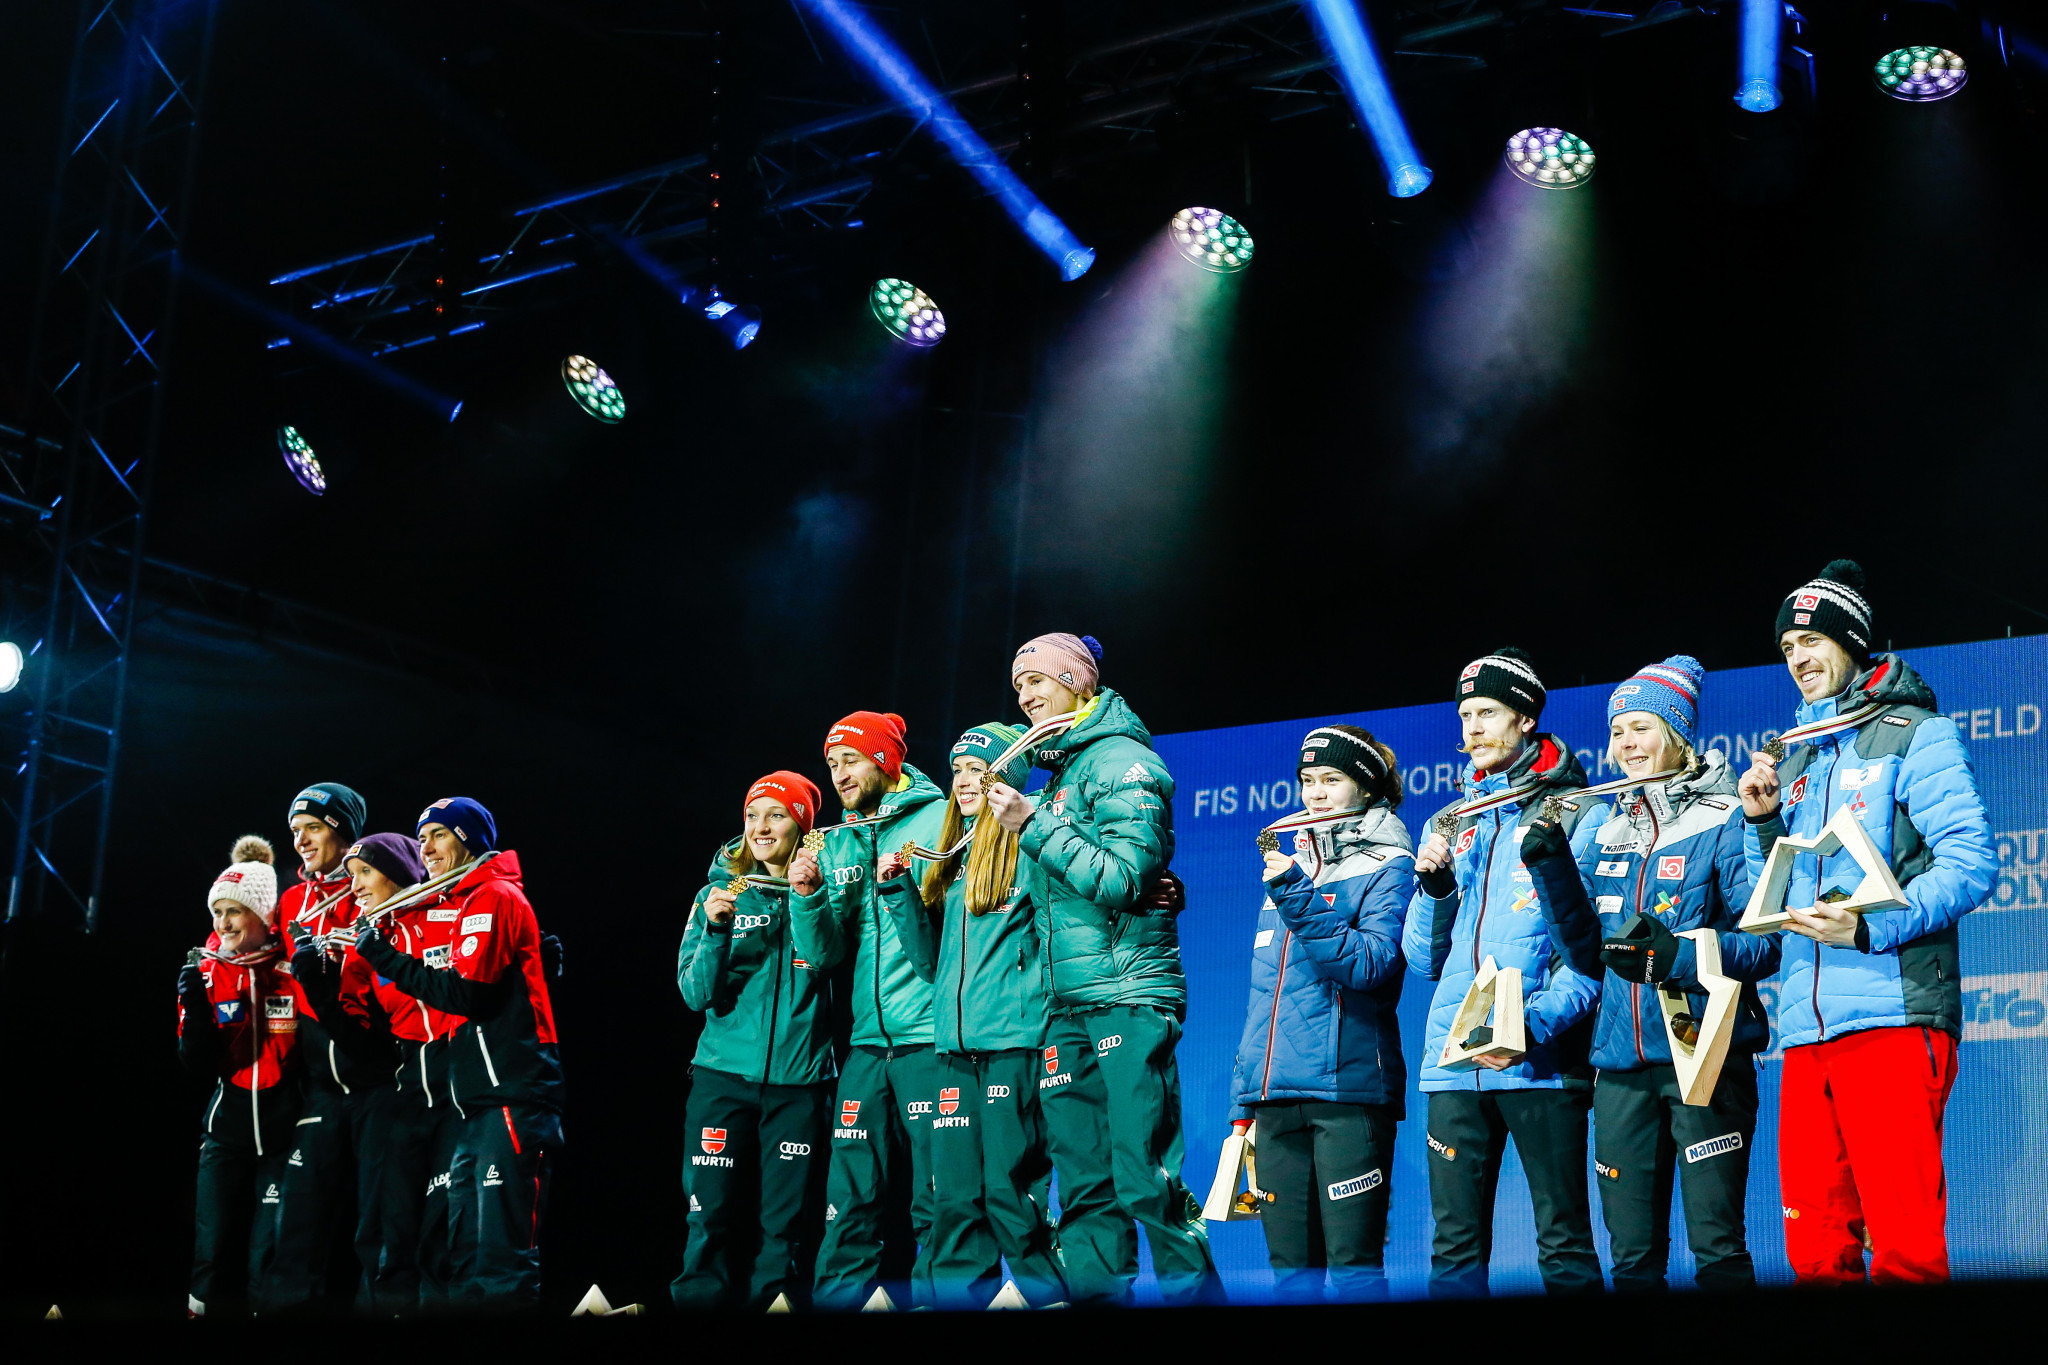 La toute première épreuve conjointe de la Coupe du monde de saut à ski FIS masculine et féminine est prévue à Rasnov du 18 au 20 février, avec une épreuve par équipes mixtes qui figurera au programme © Getty Images